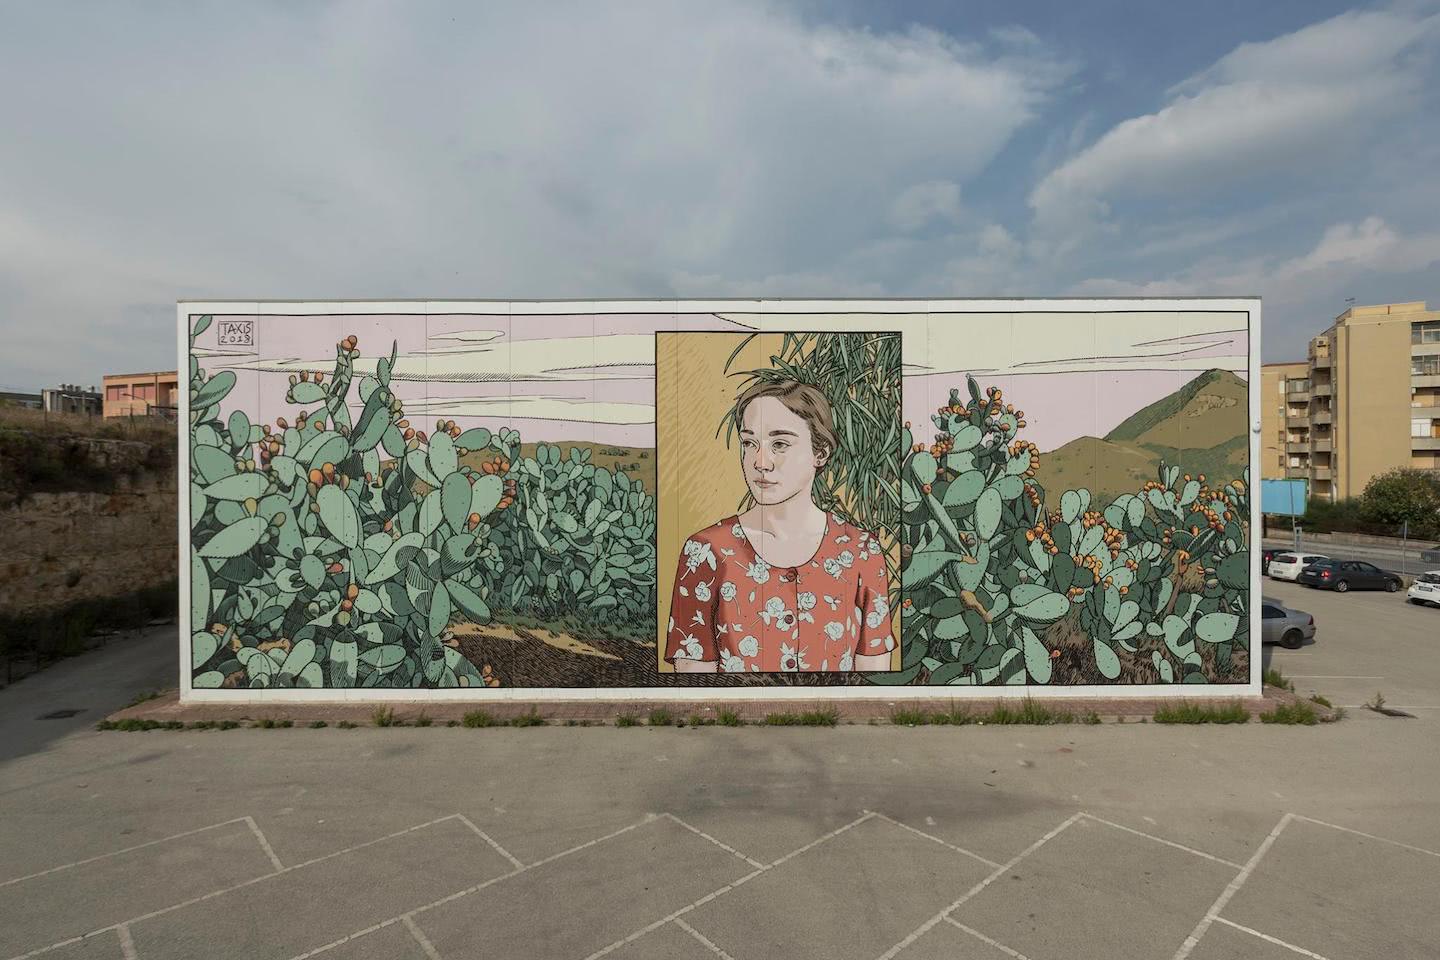 2018 mural for Festiwall in Ragusa, Sicily